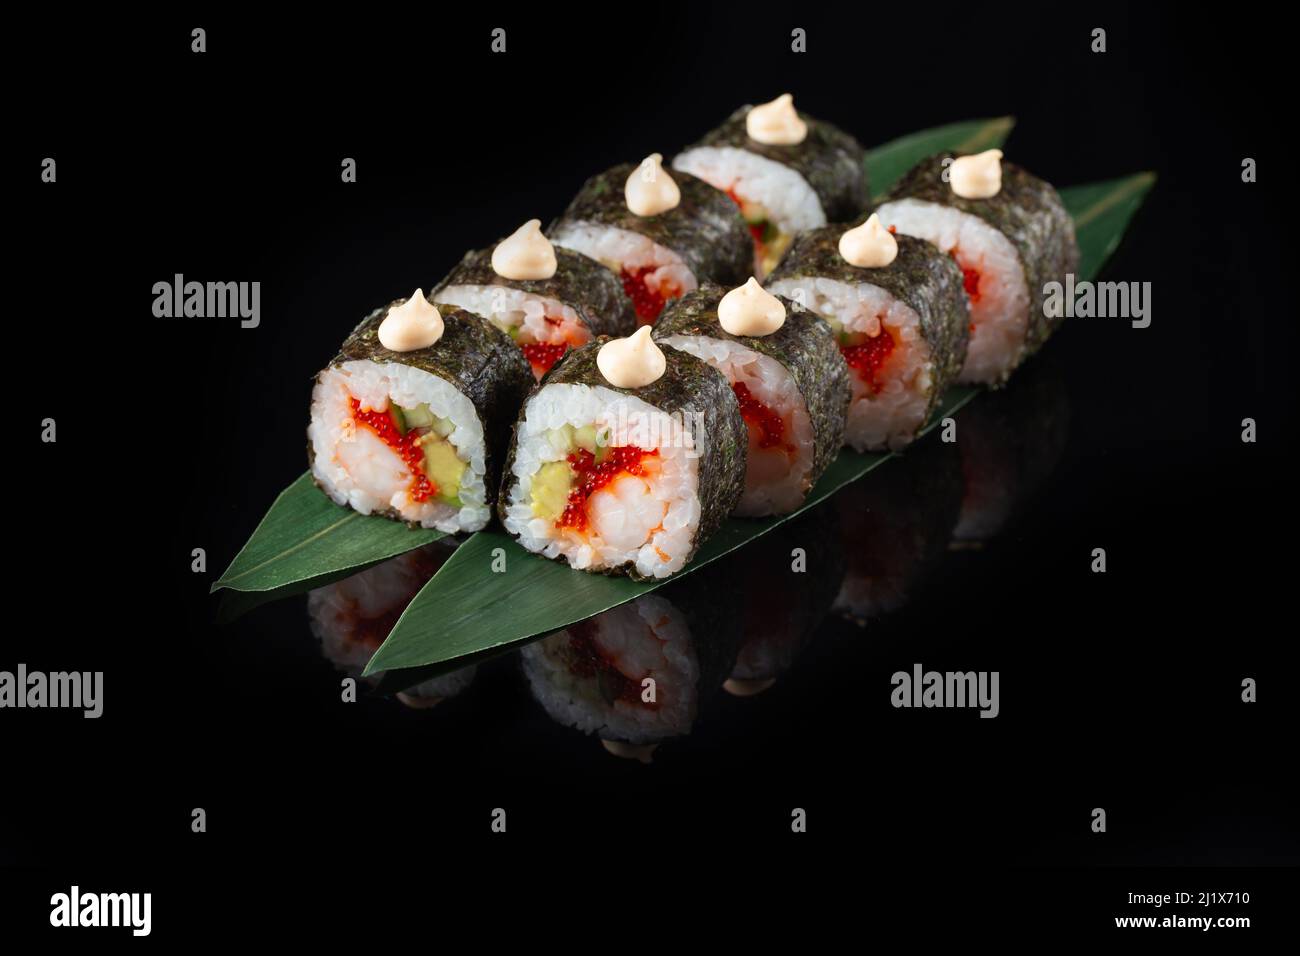 Traditionelle, köstliche, frische Sushi-Rolle auf schwarzem Hintergrund mit Spiegelung. Sushi-Rolle mit Reis, Nori, Frischkäse, Tobiko-Kaviar, Avocado. So Stockfoto